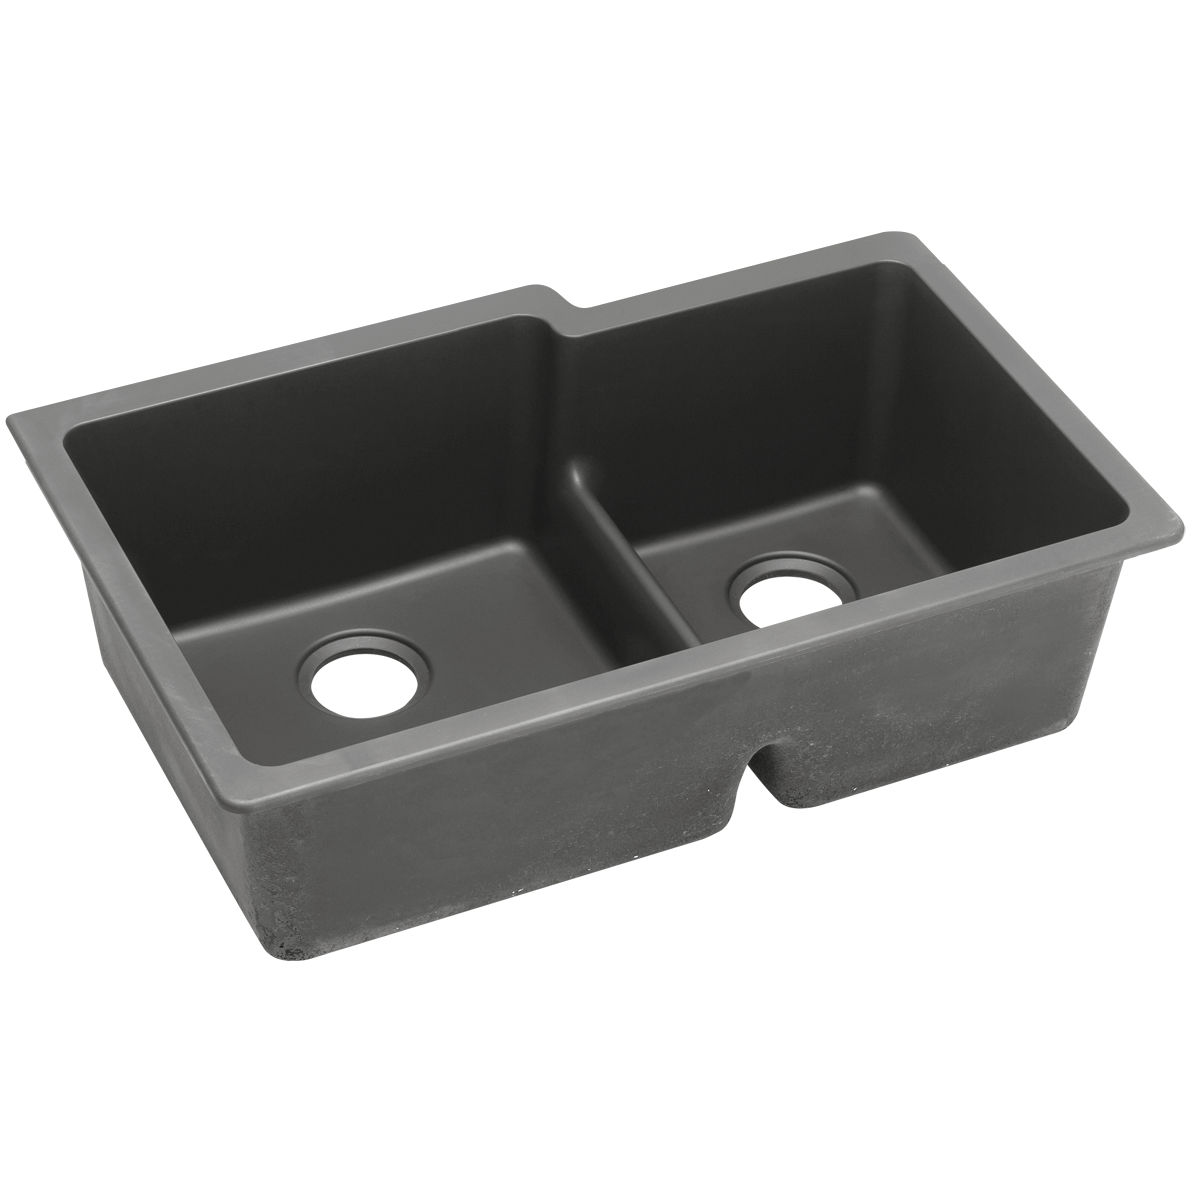 Quartz Classic 33x20-1/2x9-1/2" Double Bowl Sink Dusk Gray